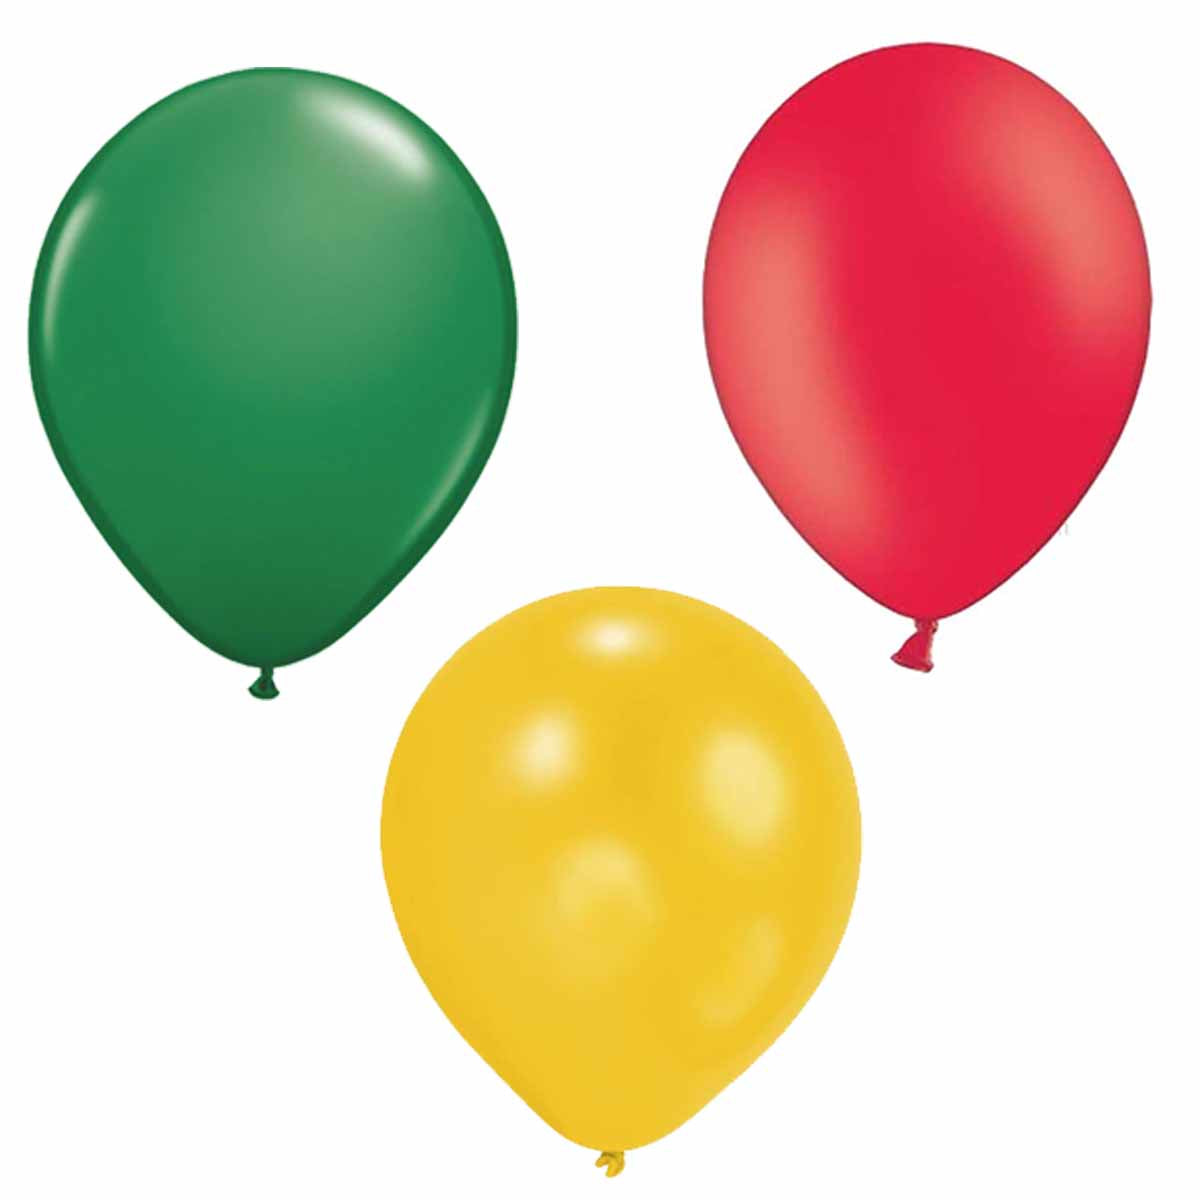 Ballons Rot/Grün/Gelb 6 Stück